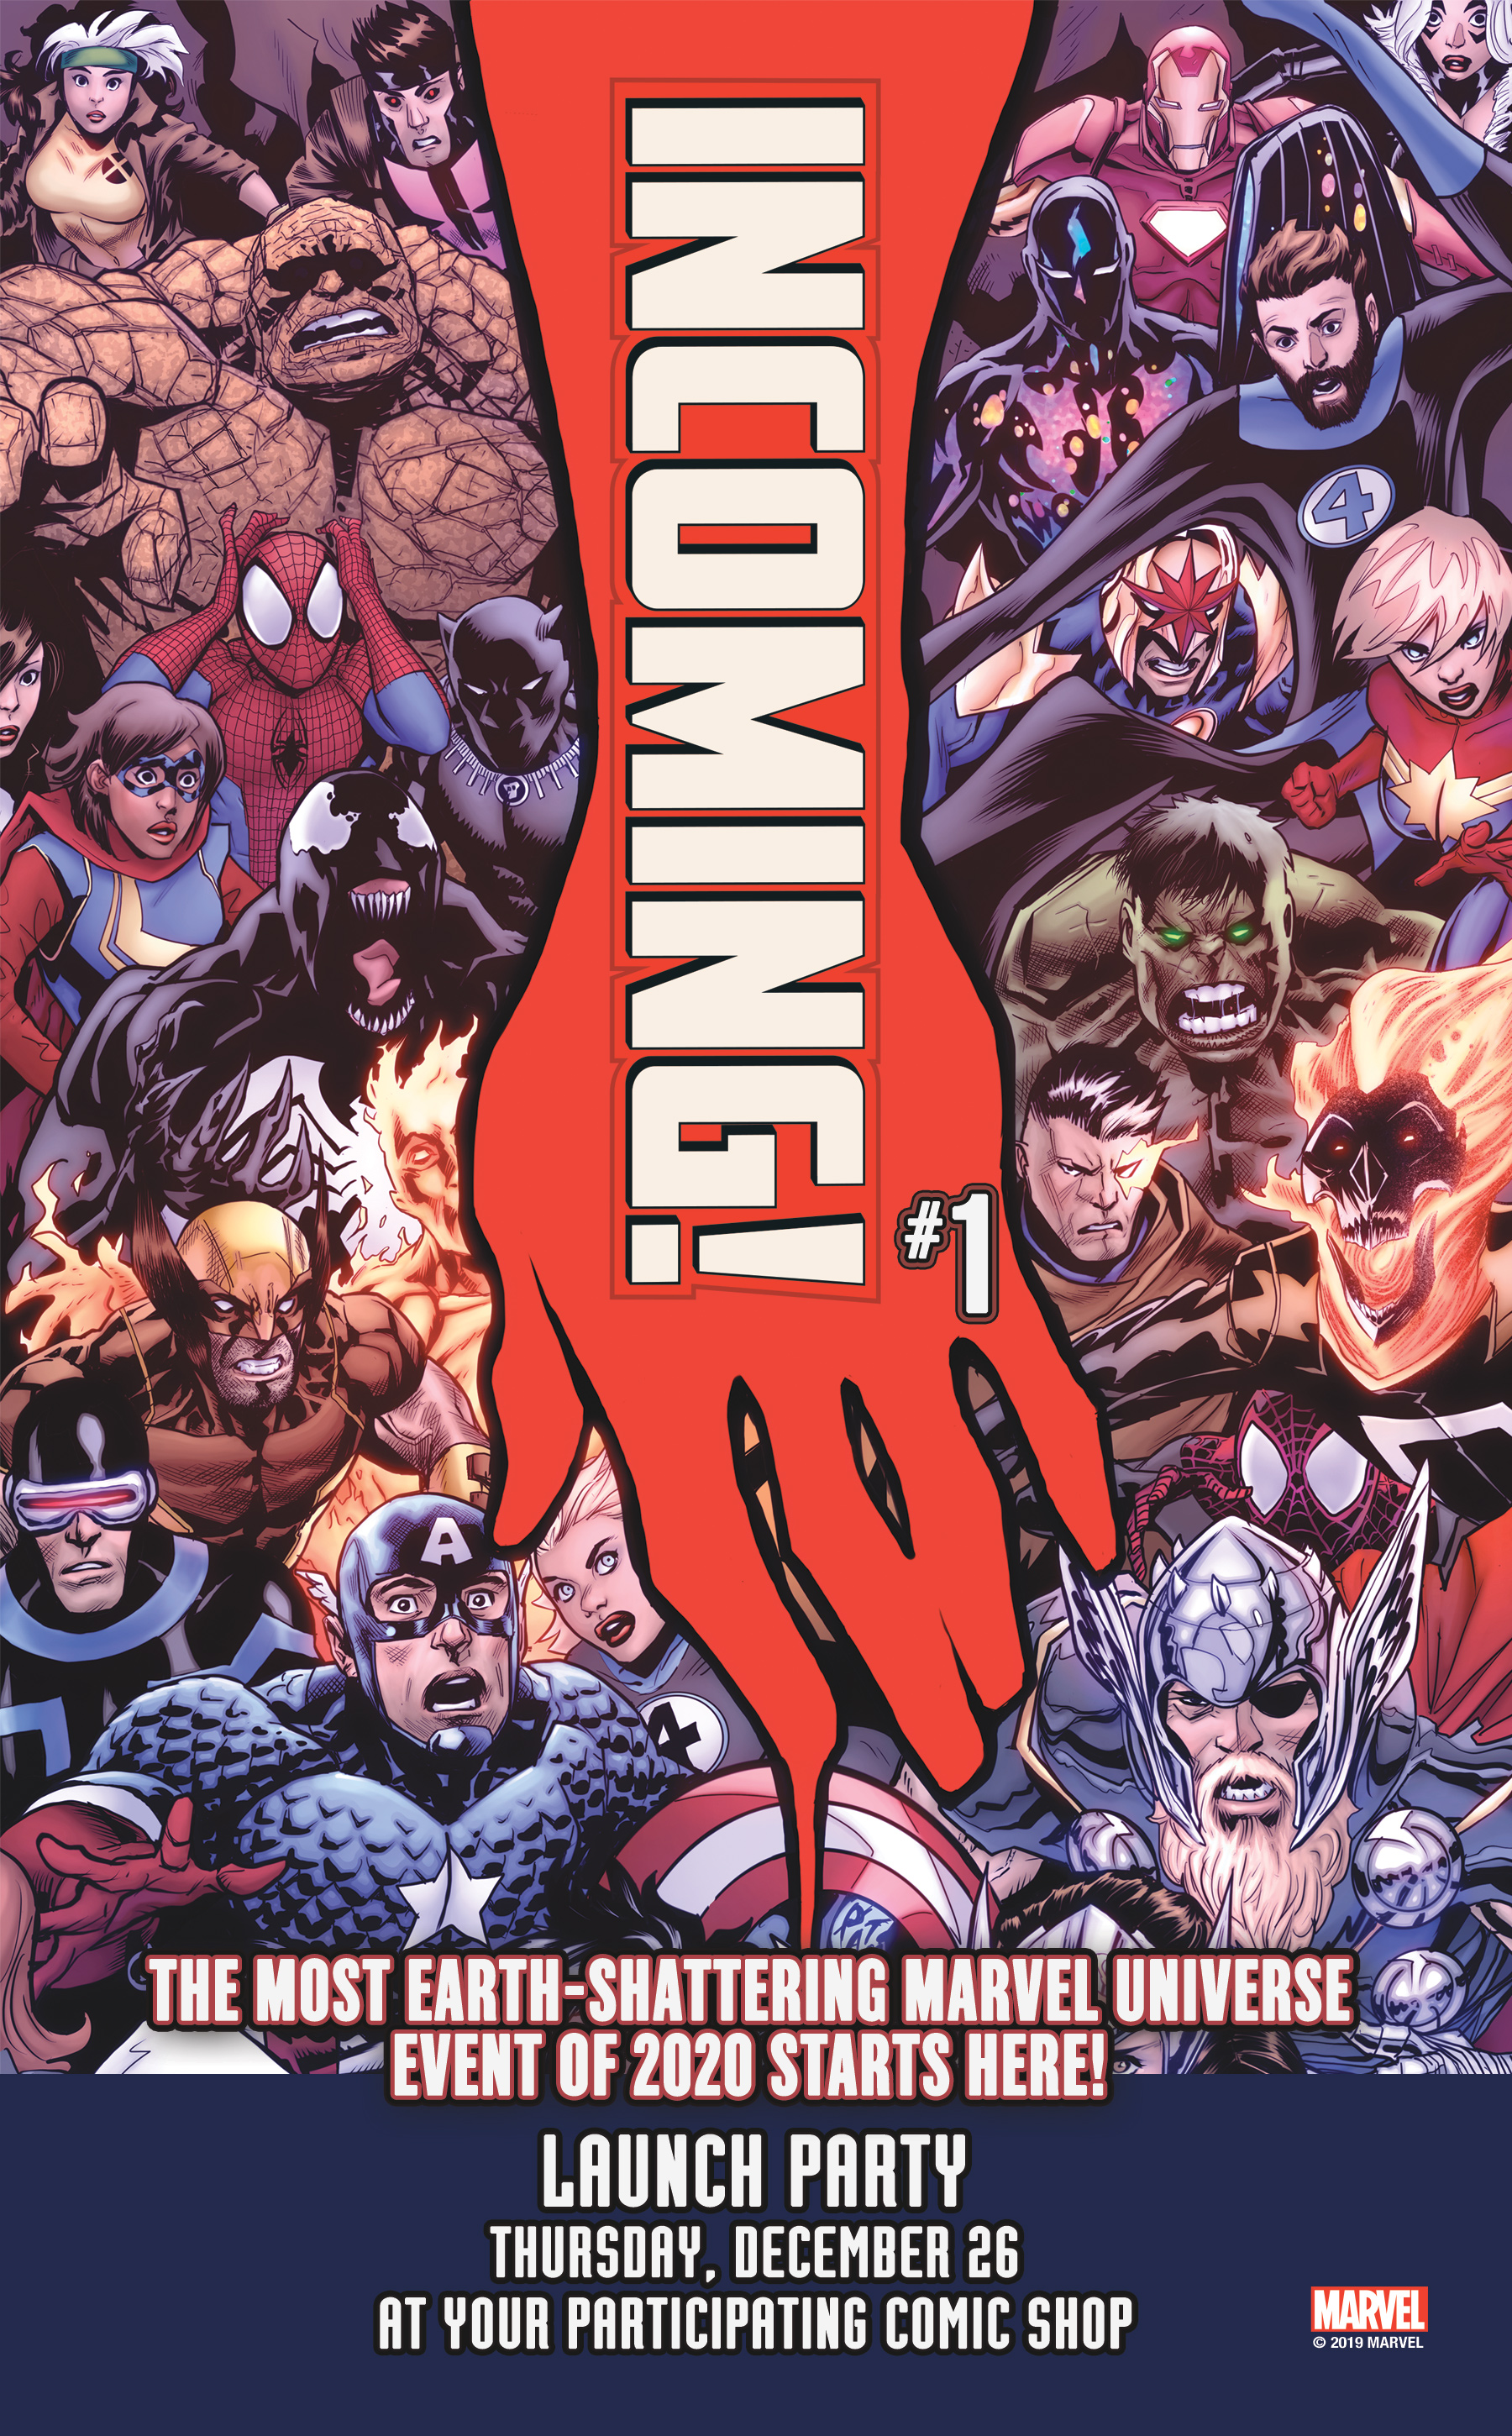 Marvel Comics INCOMING #1 2019